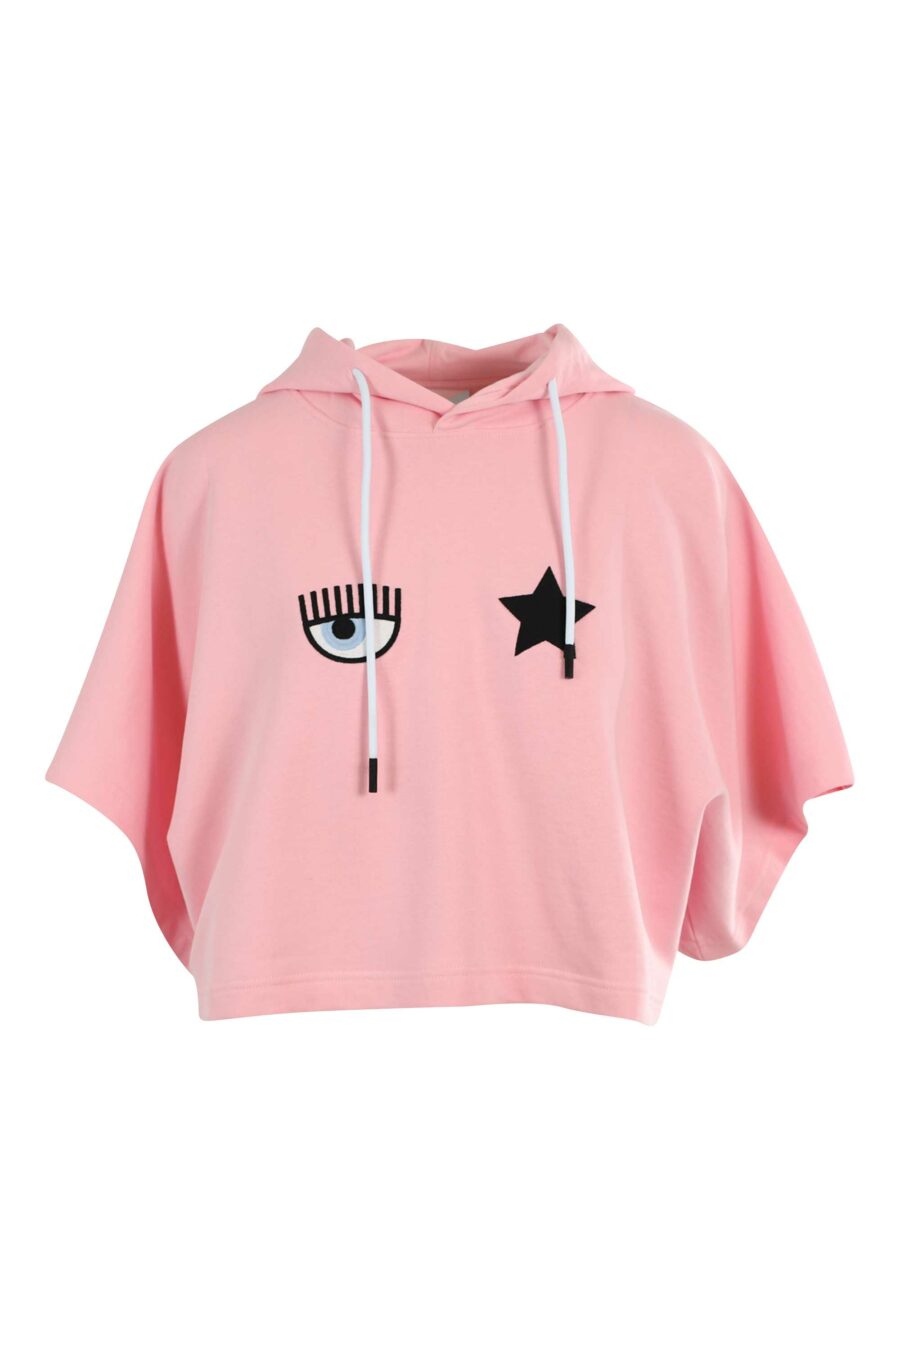 Sudadera manga corta rosa con capucha y logo ojo y estrella - 8052672449337